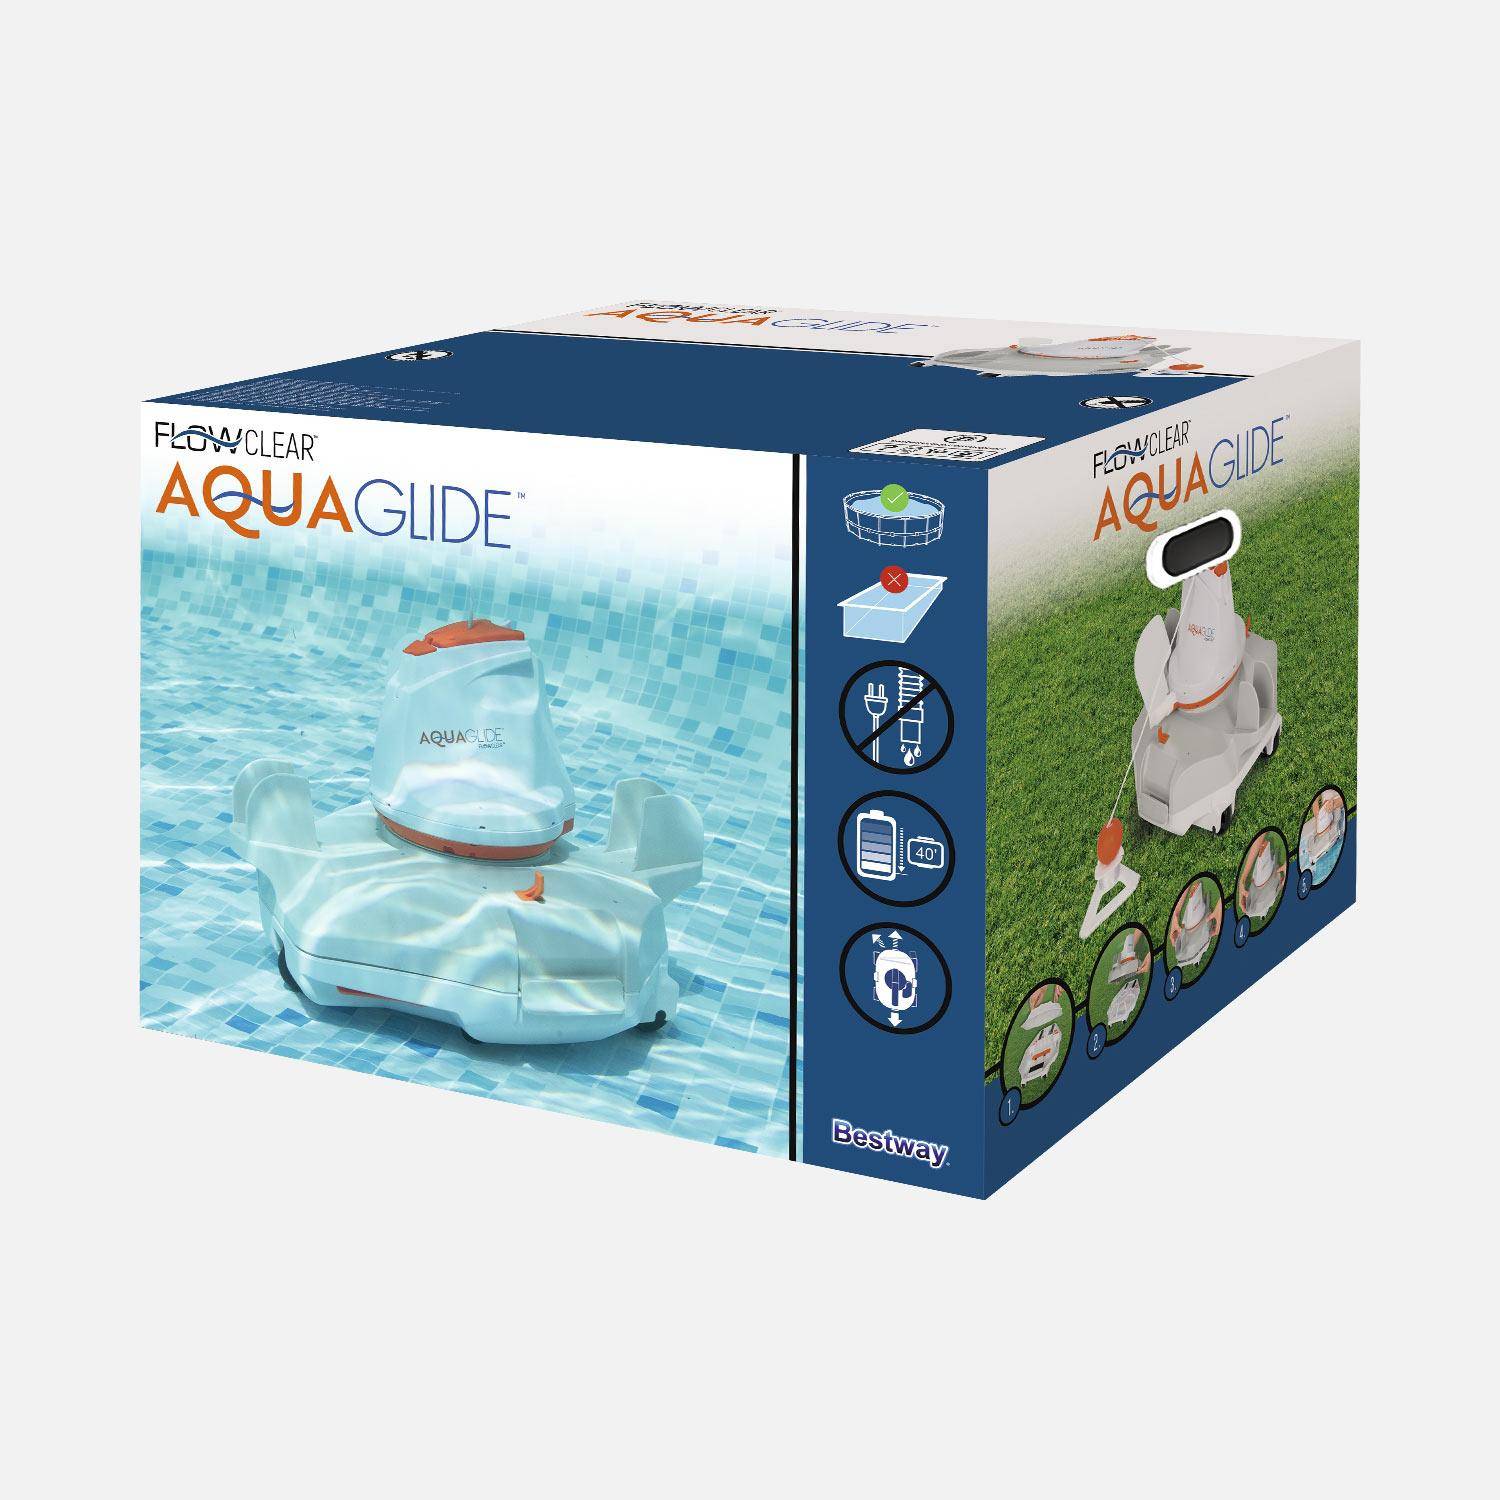 Autonome Flowclear aquaglide robot zwembadreiniger voor zwembaden met een vlakke vloer tot 20m² Photo6